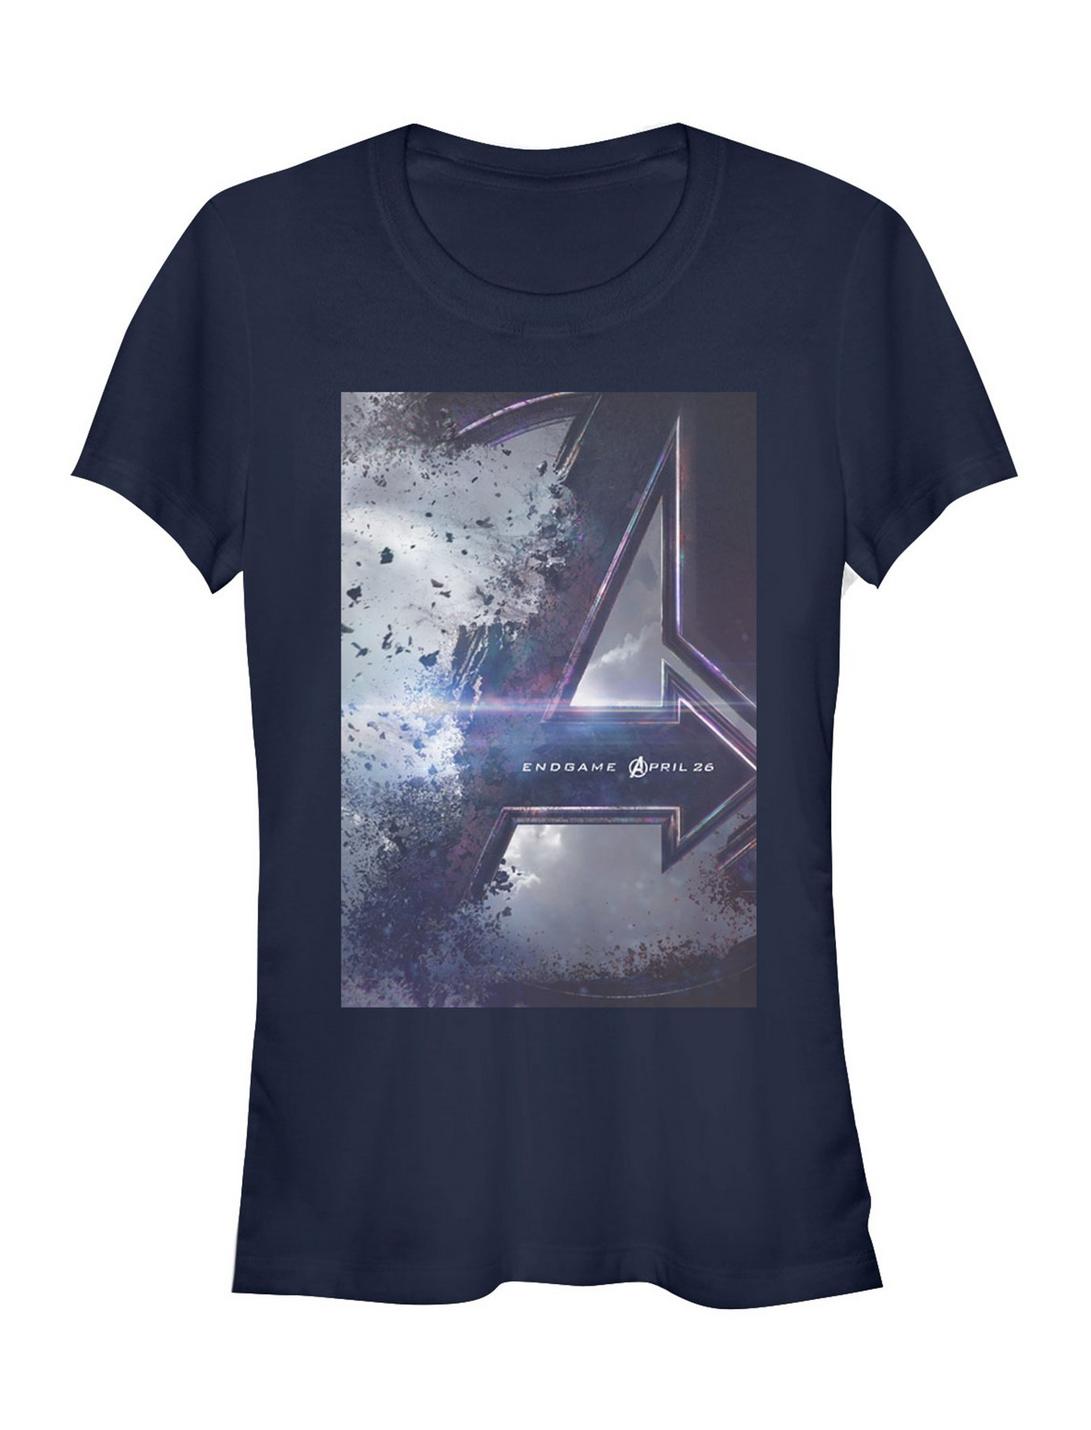 Marvel Avengers Endgame Poster Girls T-Shirt, NAVY, hi-res